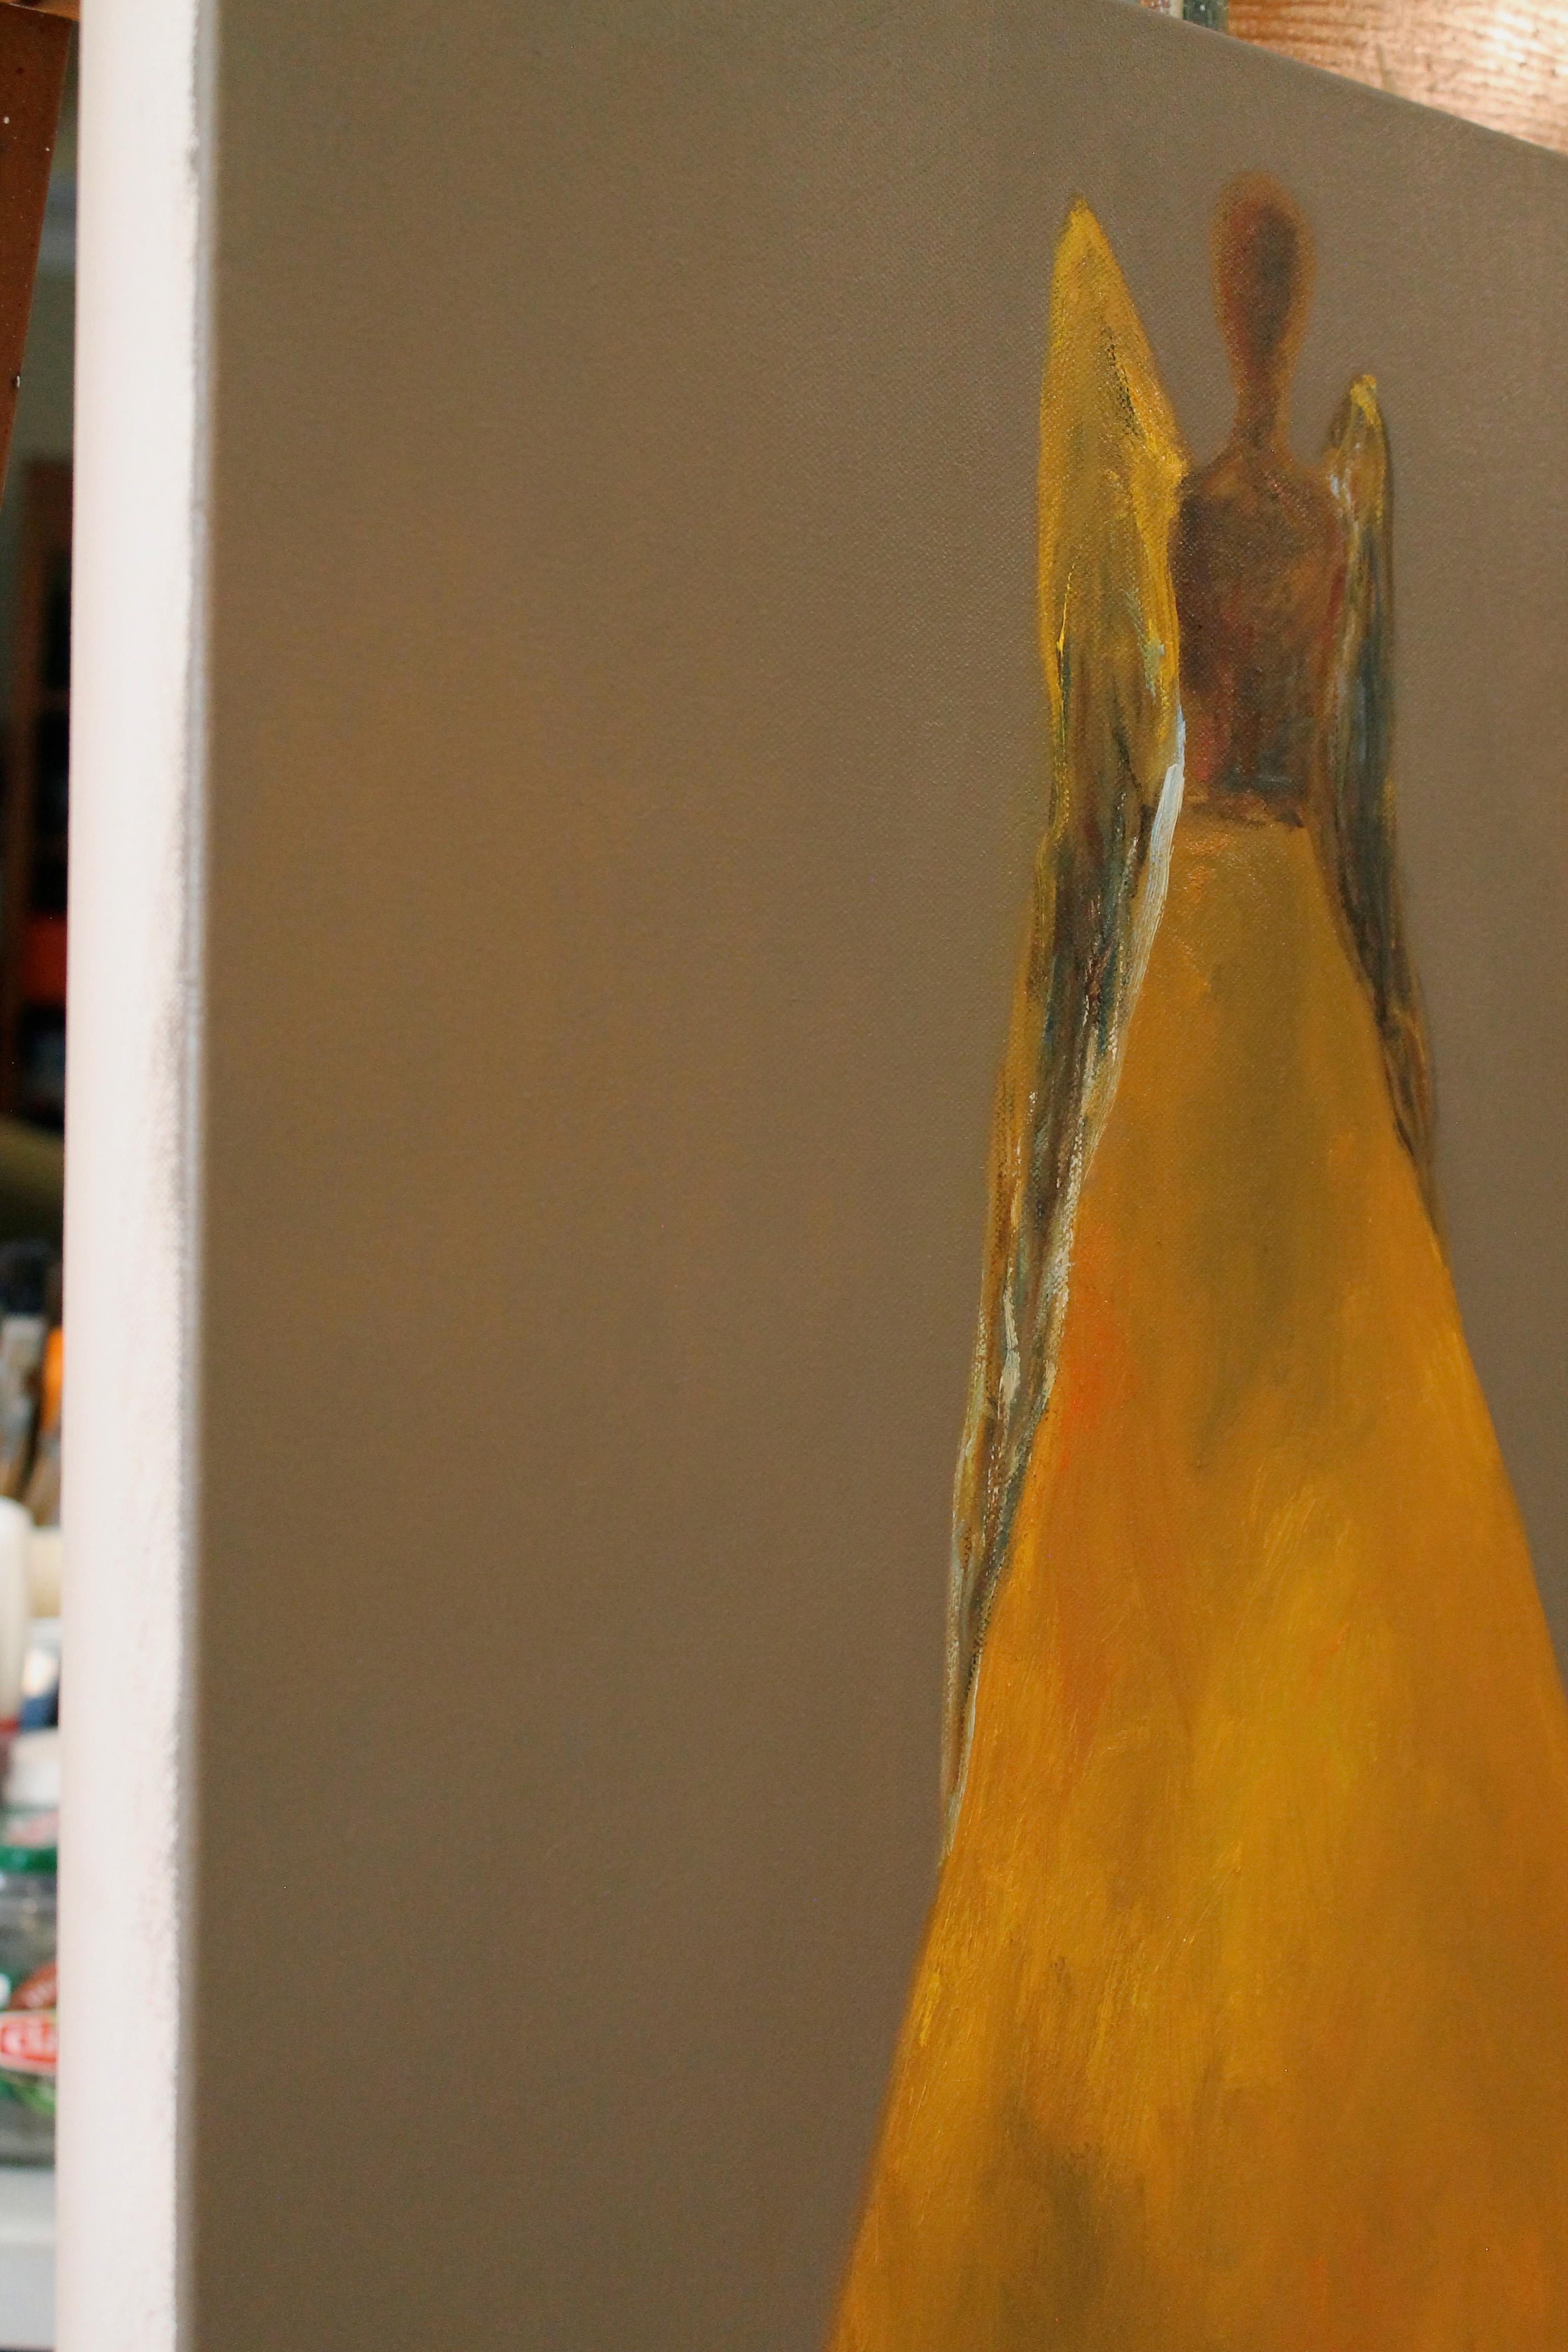 <p>Commentaires de l'artiste<br />L'artiste Naoko Paluszak peint un personnage vêtu d'une longue robe dorée flottant calmement dans une atmosphère aux tons chauds. Ses ailes immaculées brillent en reflétant les derniers rayons du soleil après le